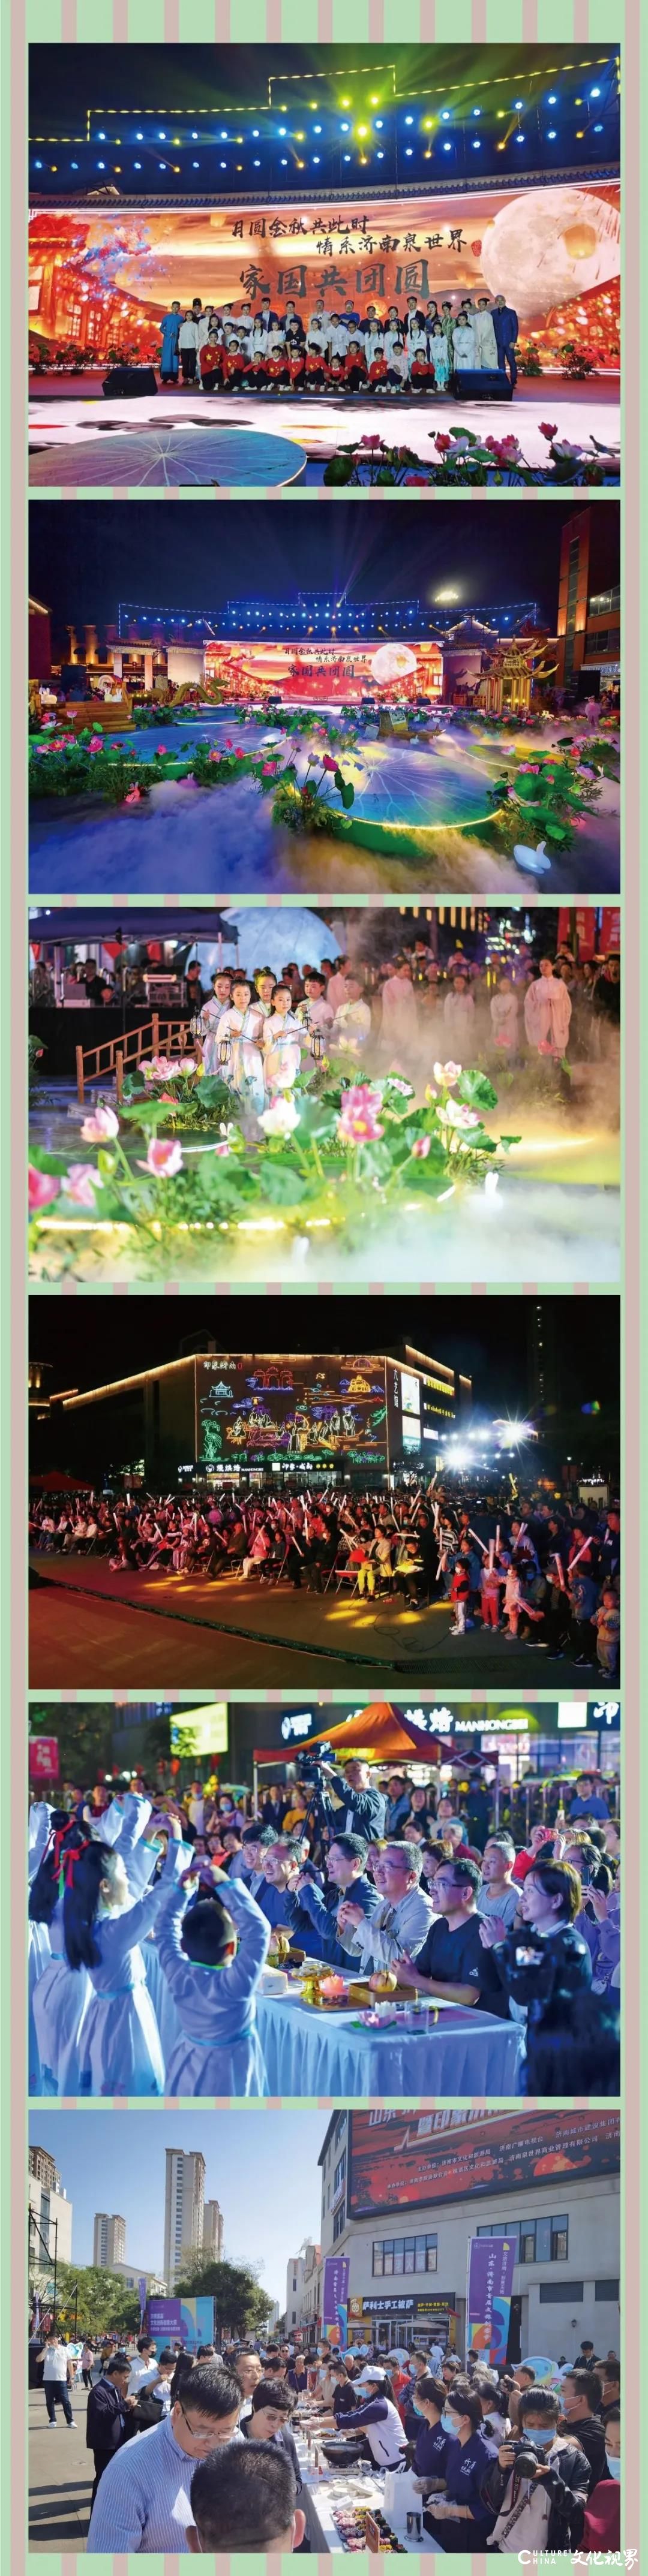 中秋国庆双节遇上两周年庆典，印象济南·泉世界喜上加喜，园区活动场场爆满